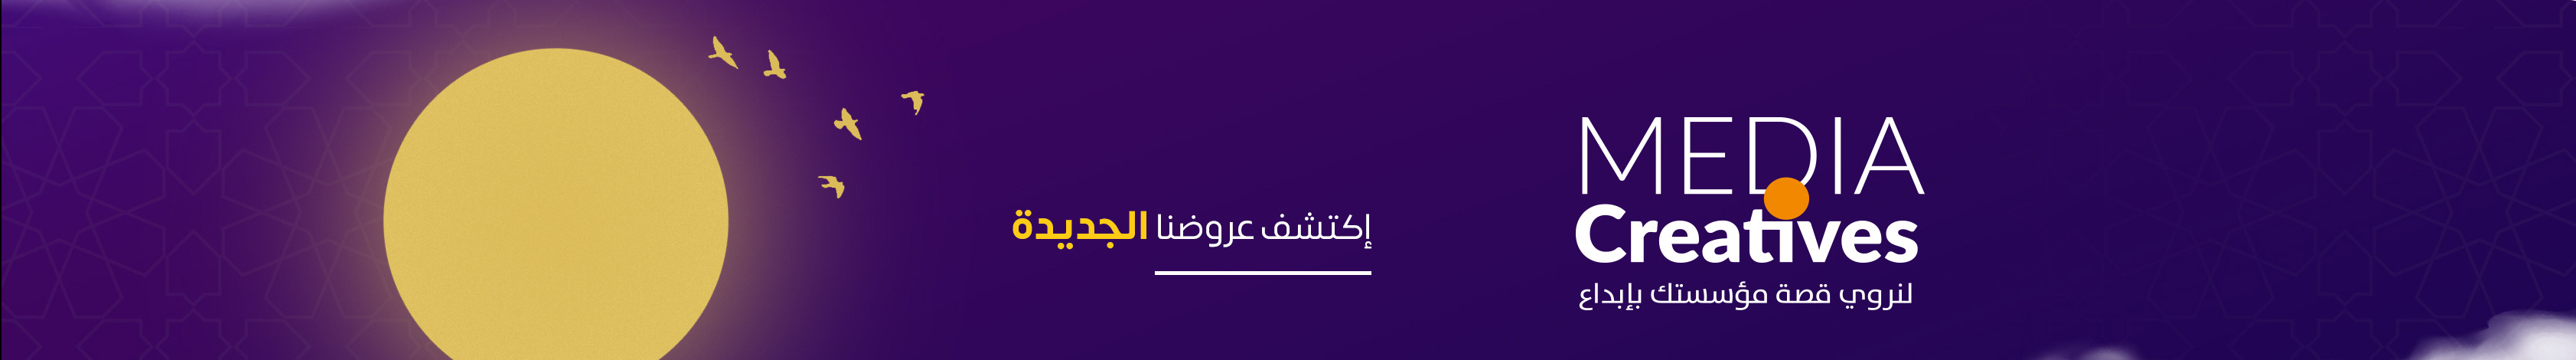 khaled djaber's profile banner